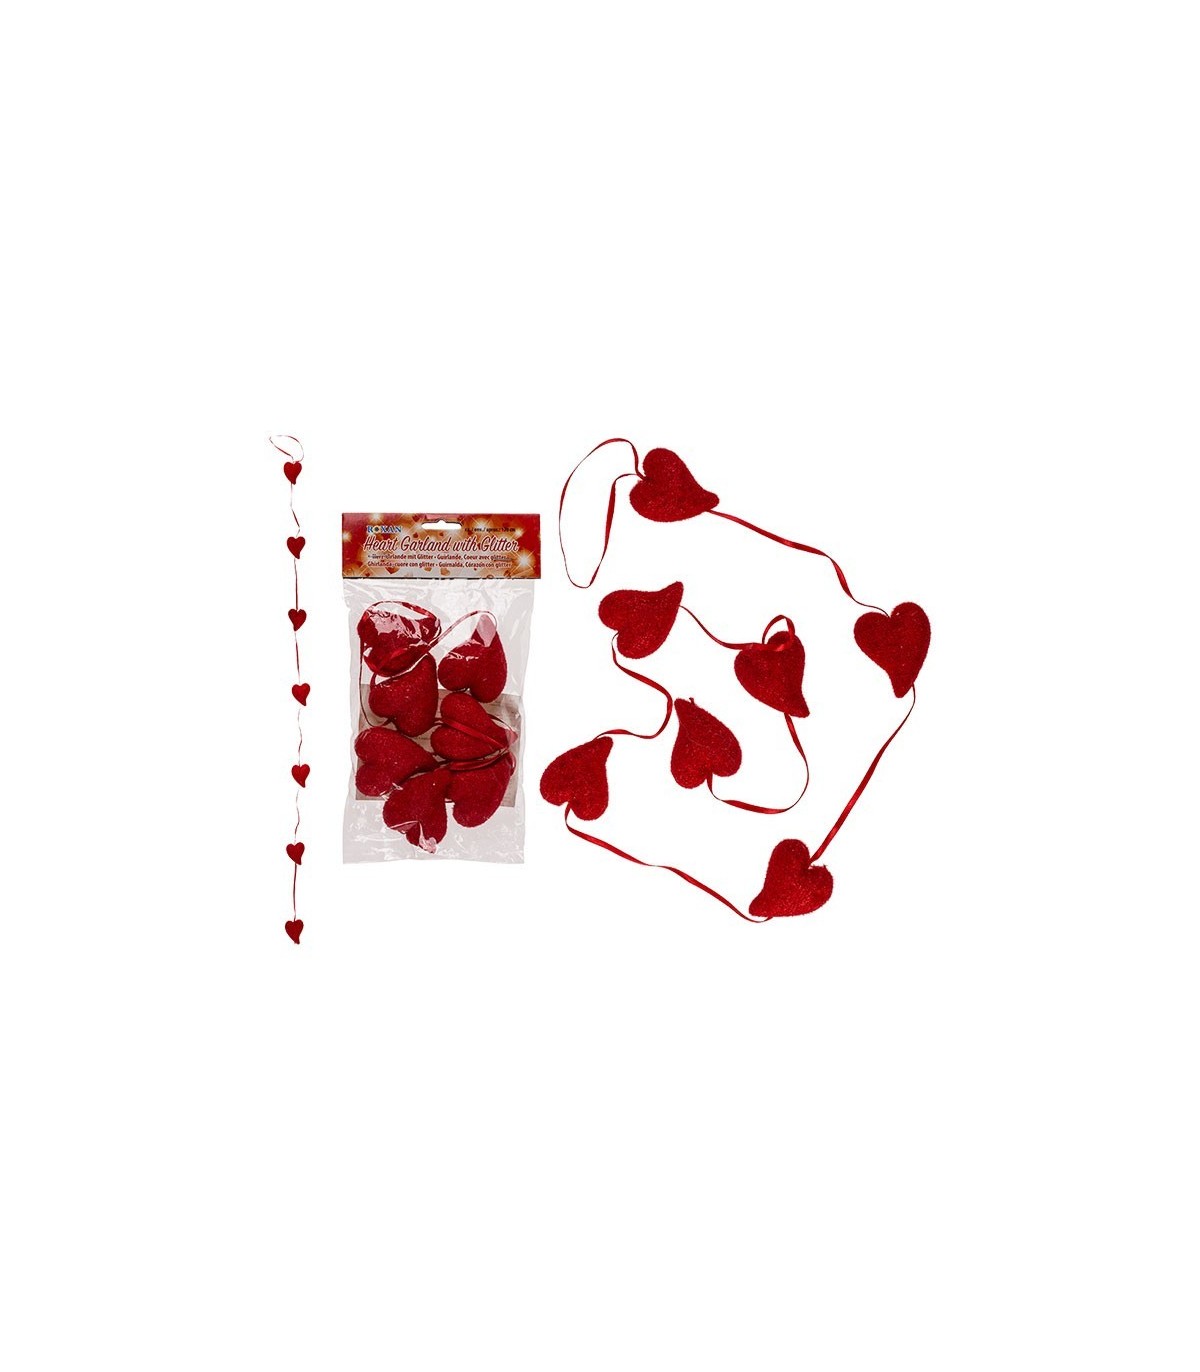 corte largo Cuidado haga turismo Compra ya tu 🎉💖 Ilumina tu San Valentín con la Guirnalda Corazón Colgante:  ¡Un toque de amor y romanticismo! 💖🎉 por solo 2,99 €